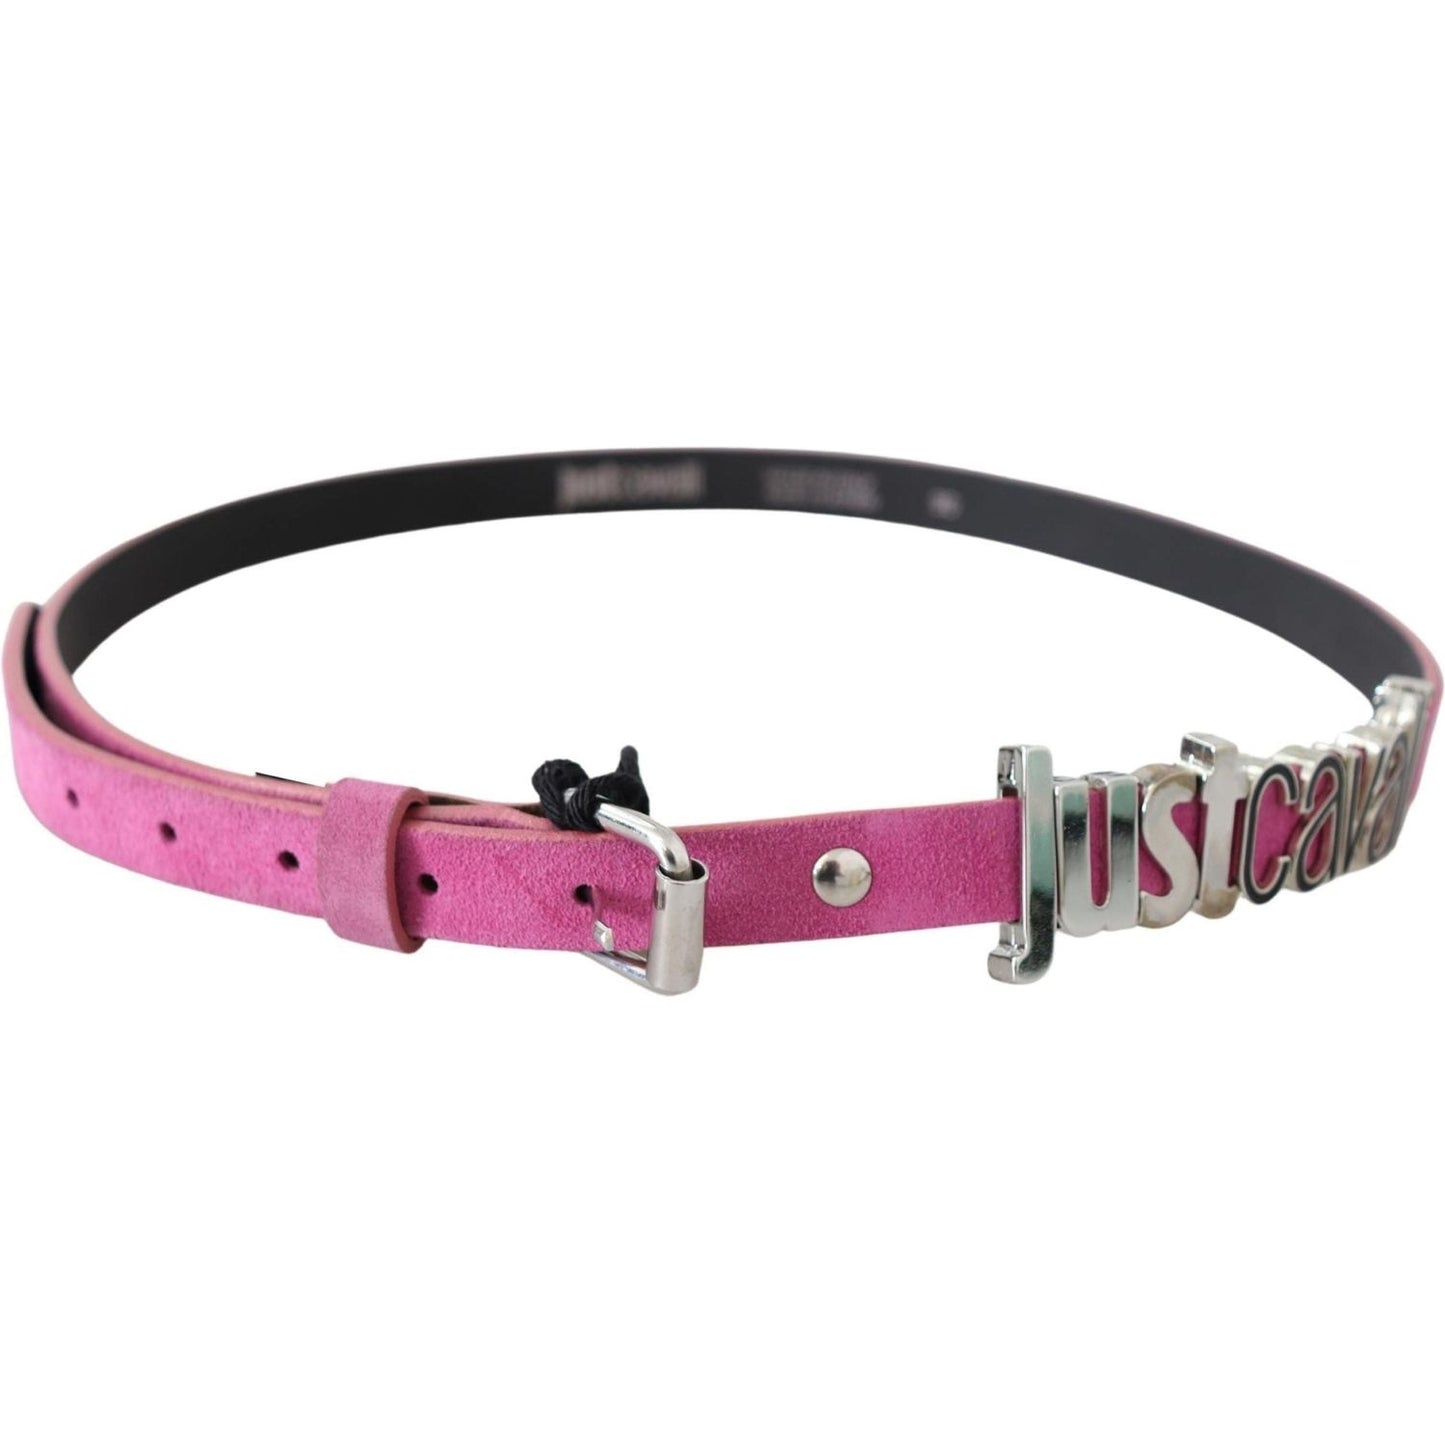 Just Cavalli Fuschia Pink Leather Waist Belt Belt pink-silver-chrome-metal-buckle-waist-belt